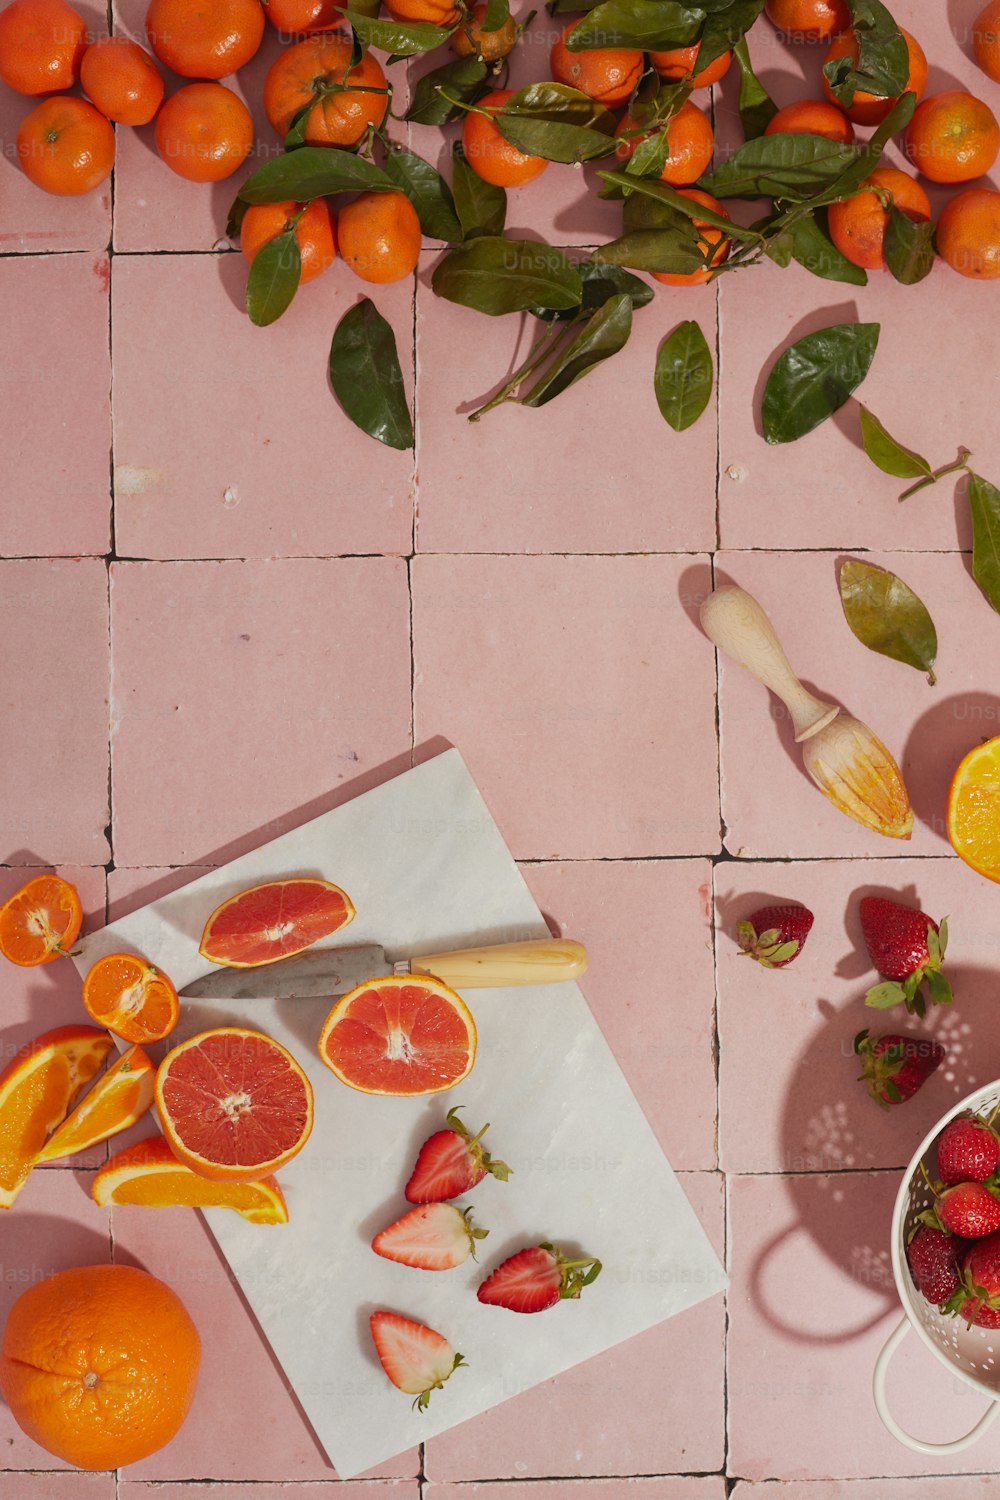 오렌지와 다른 과일을 얹은 테이블